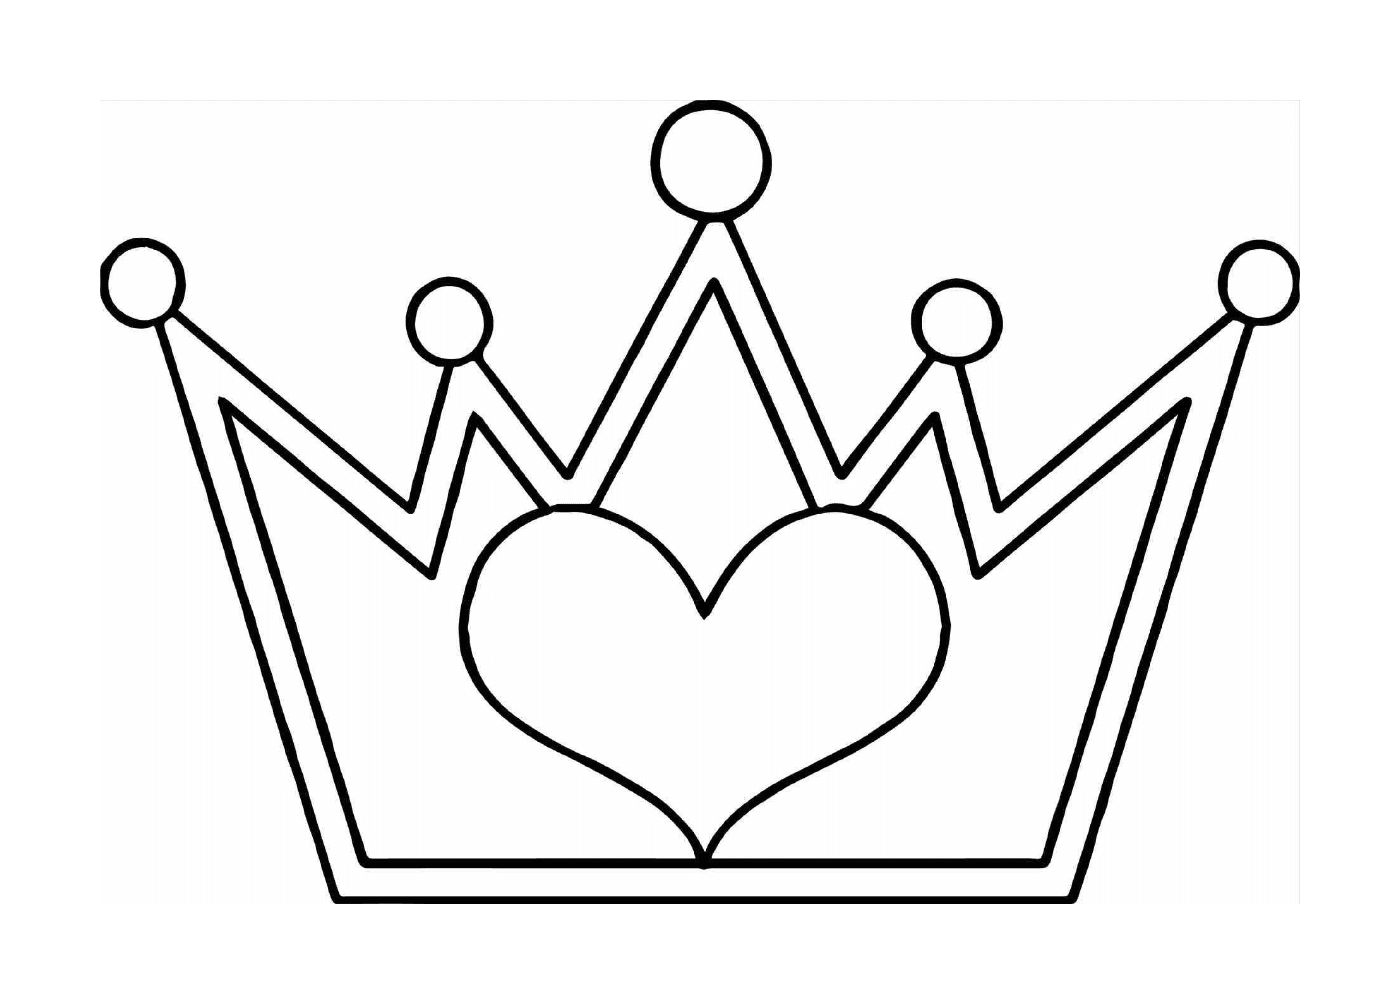  Eine Krone mit einem Herz 